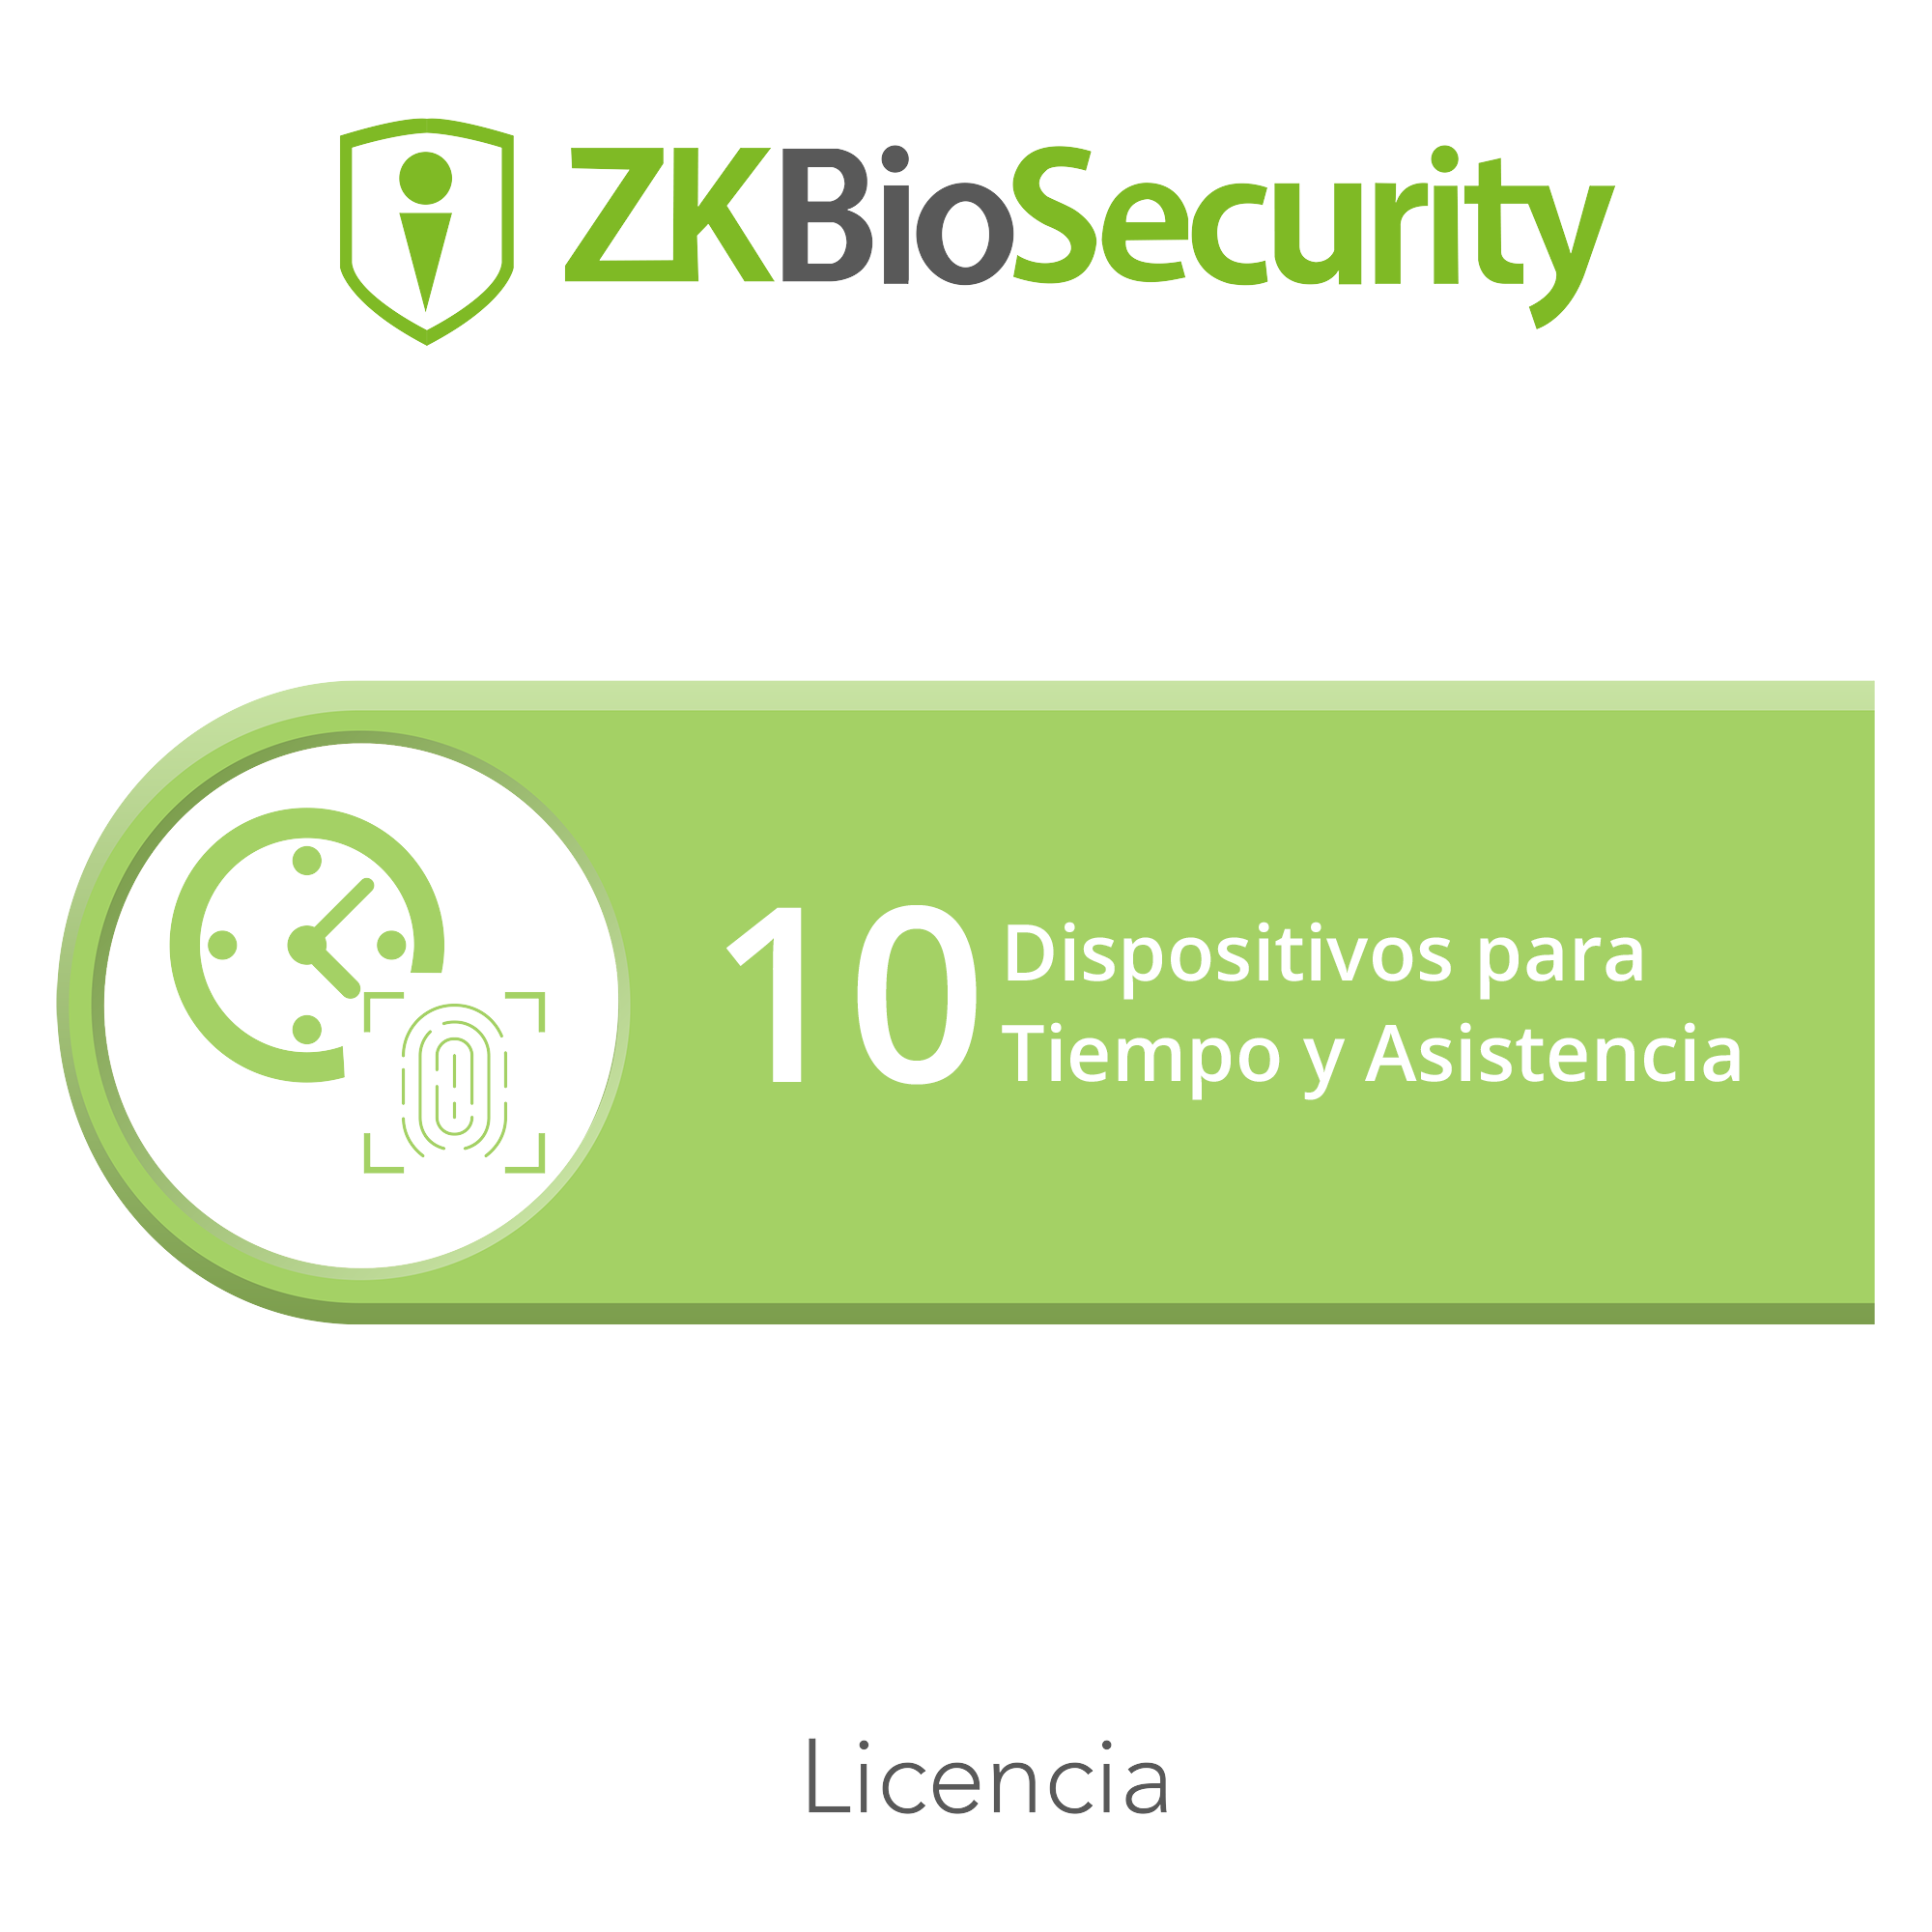 Licencia para ZKBiosecurity permite gestionar hasta 10 dispositivos para tiempo y asistencia